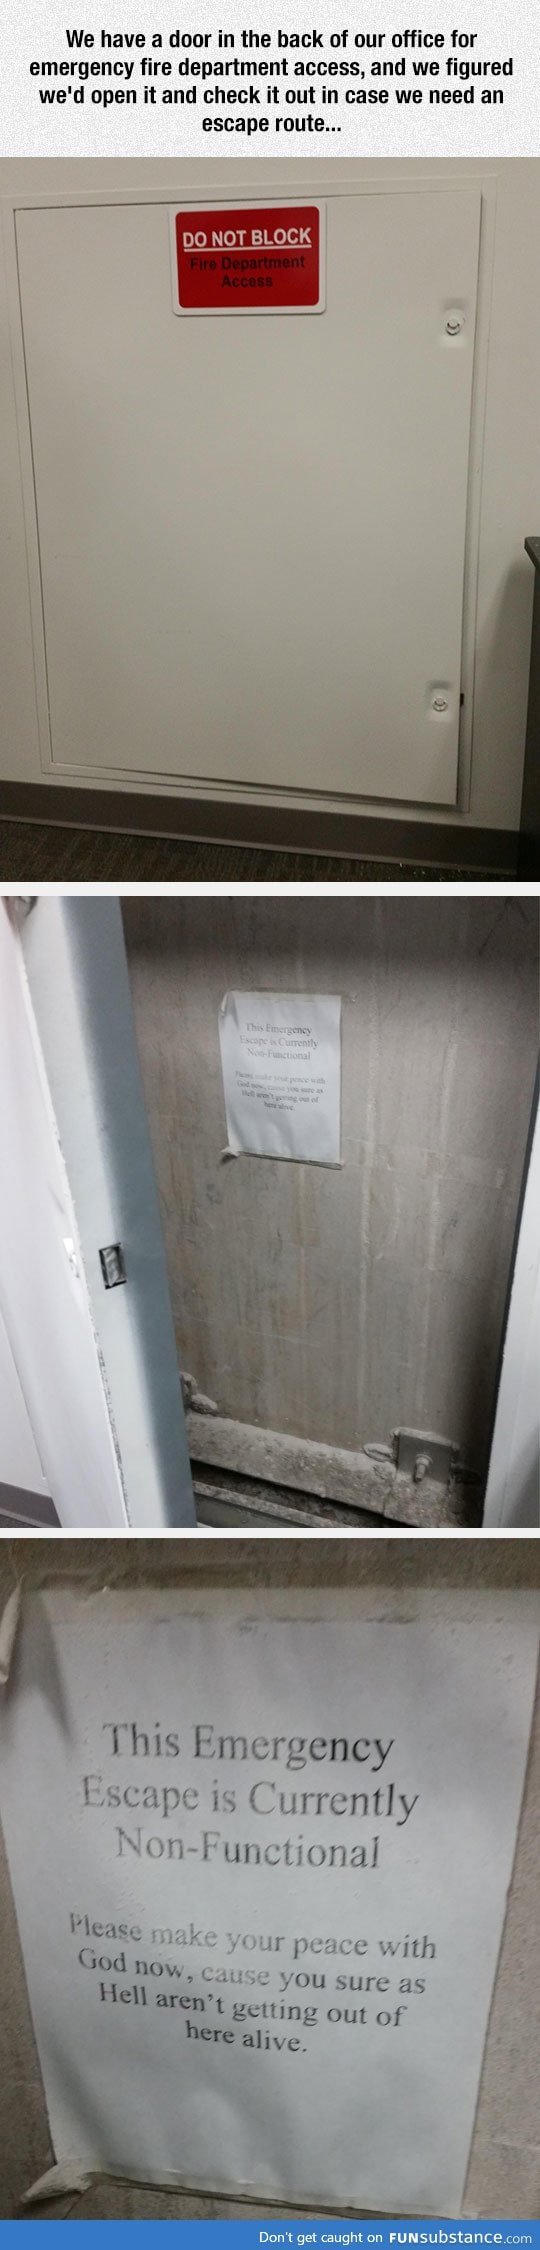 My Work's Emergency Access Door